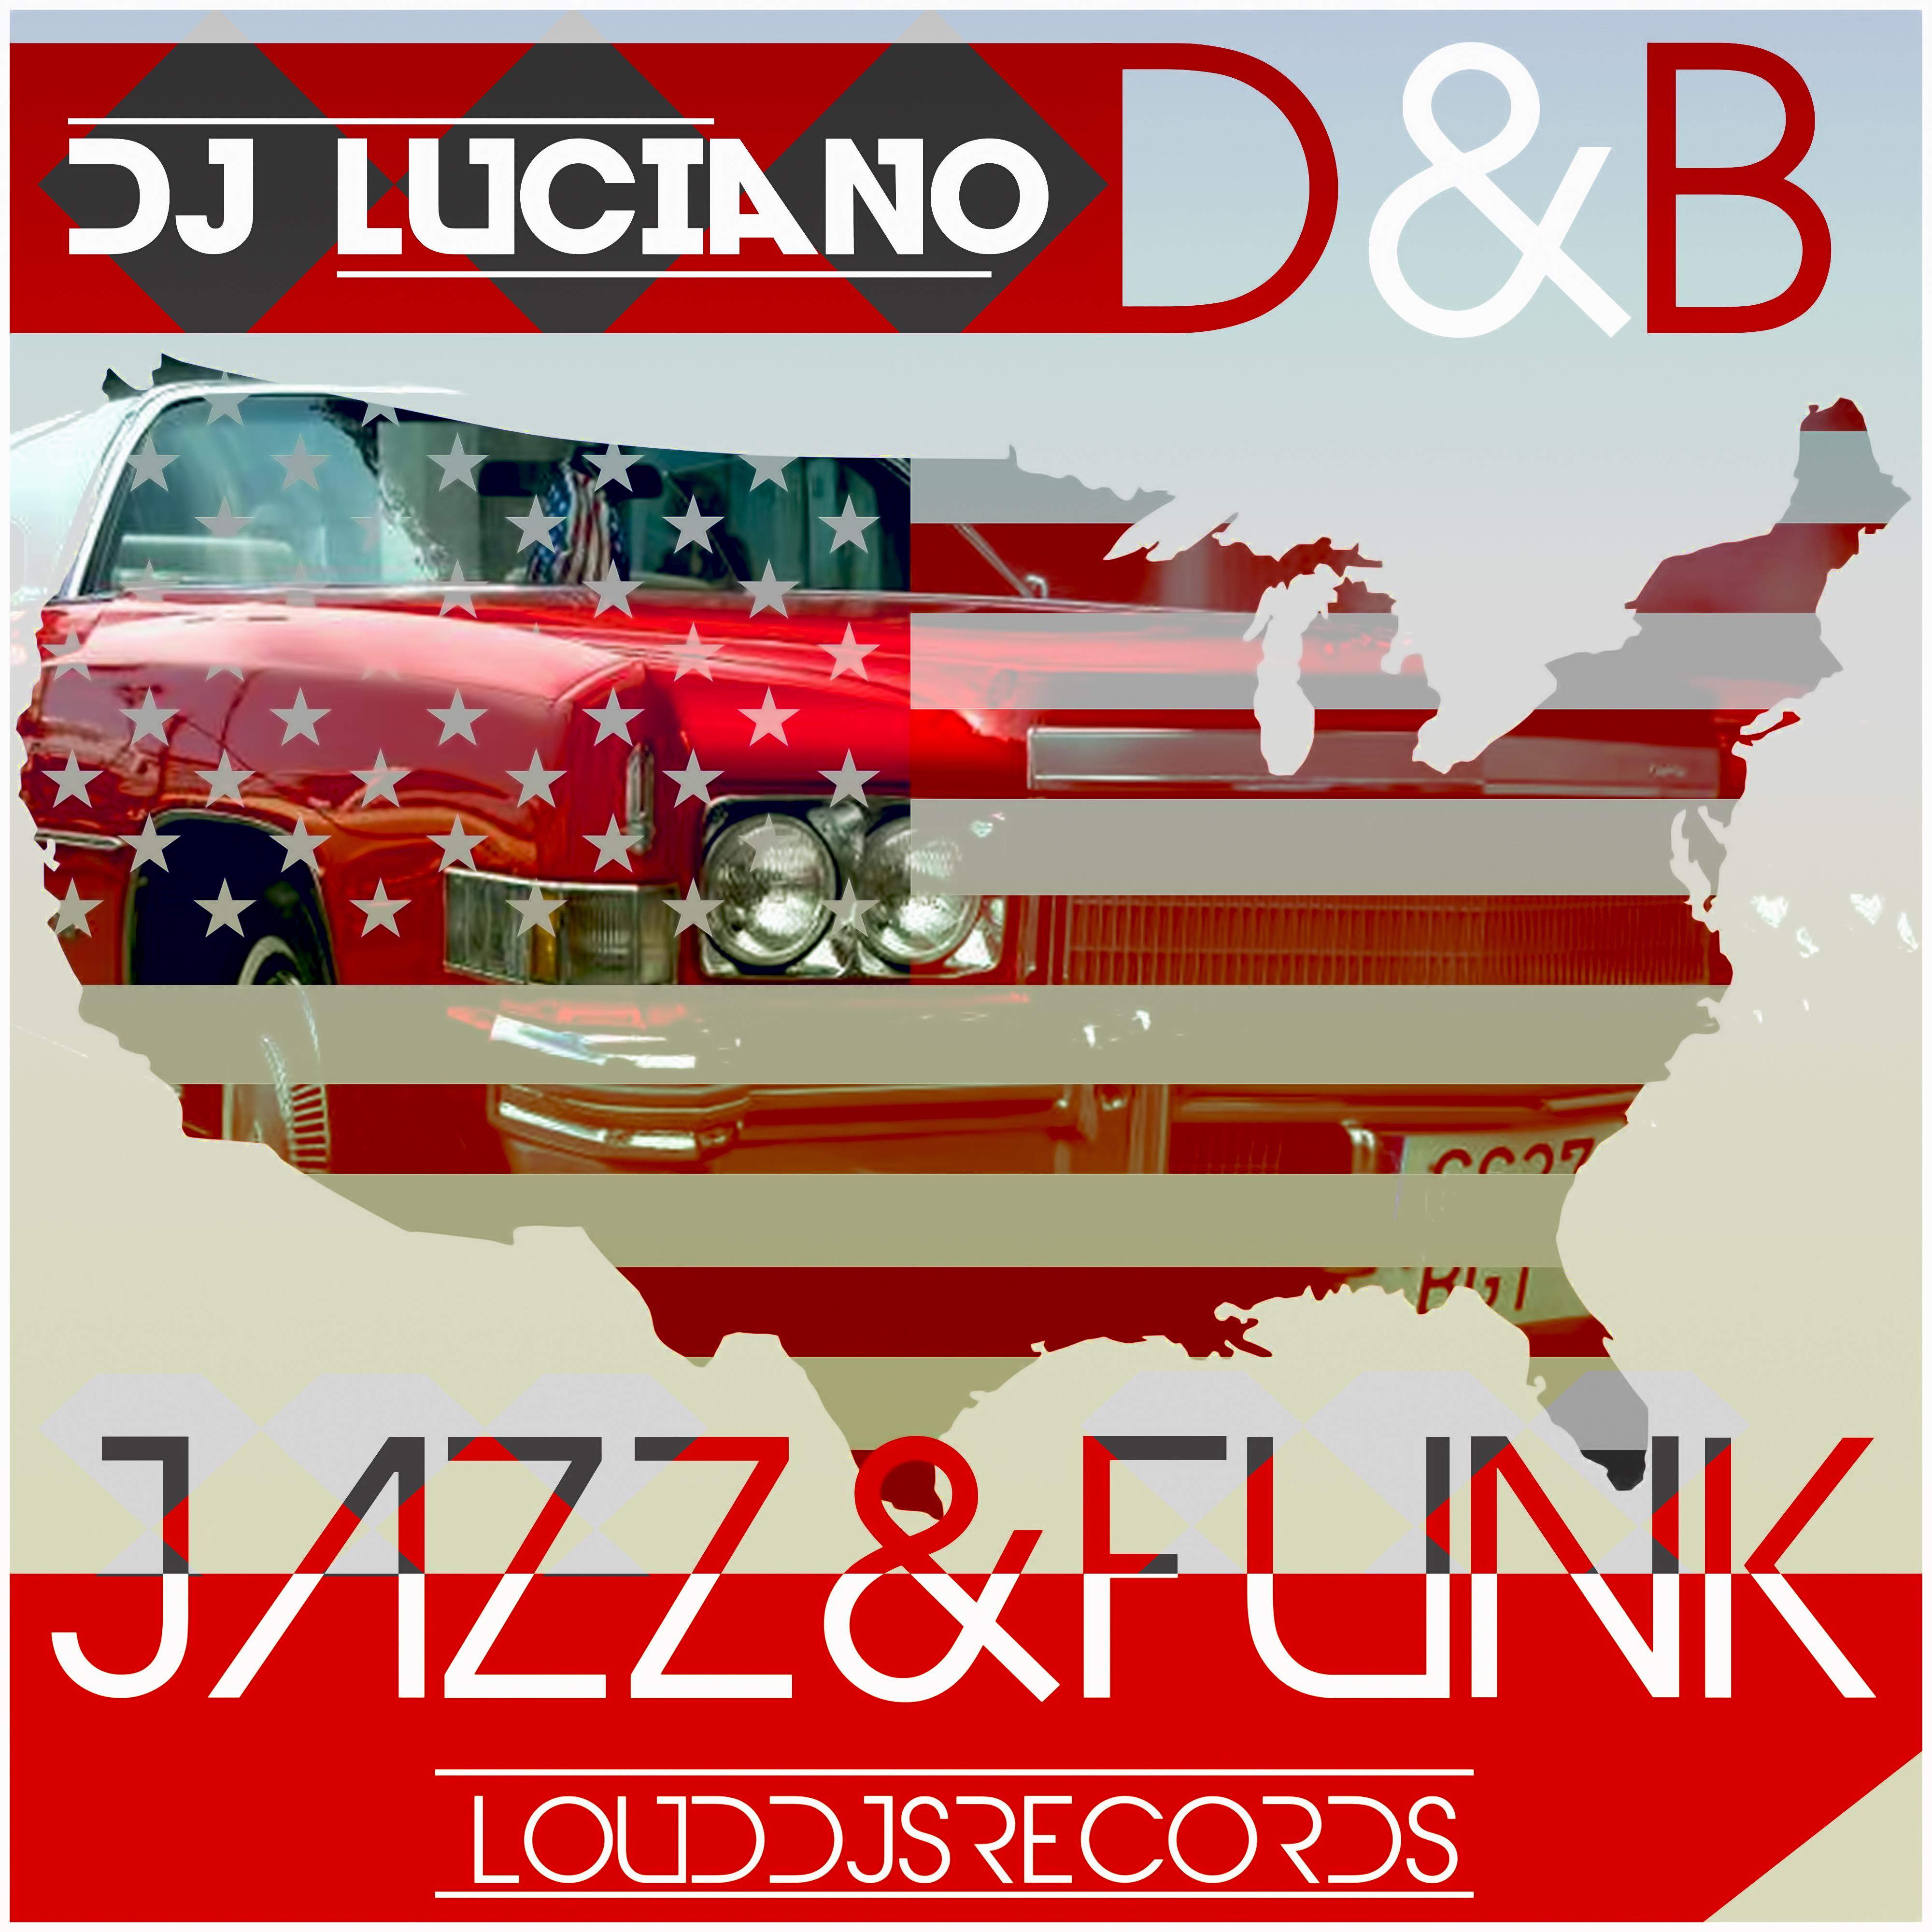 D&B Jazz & Funk